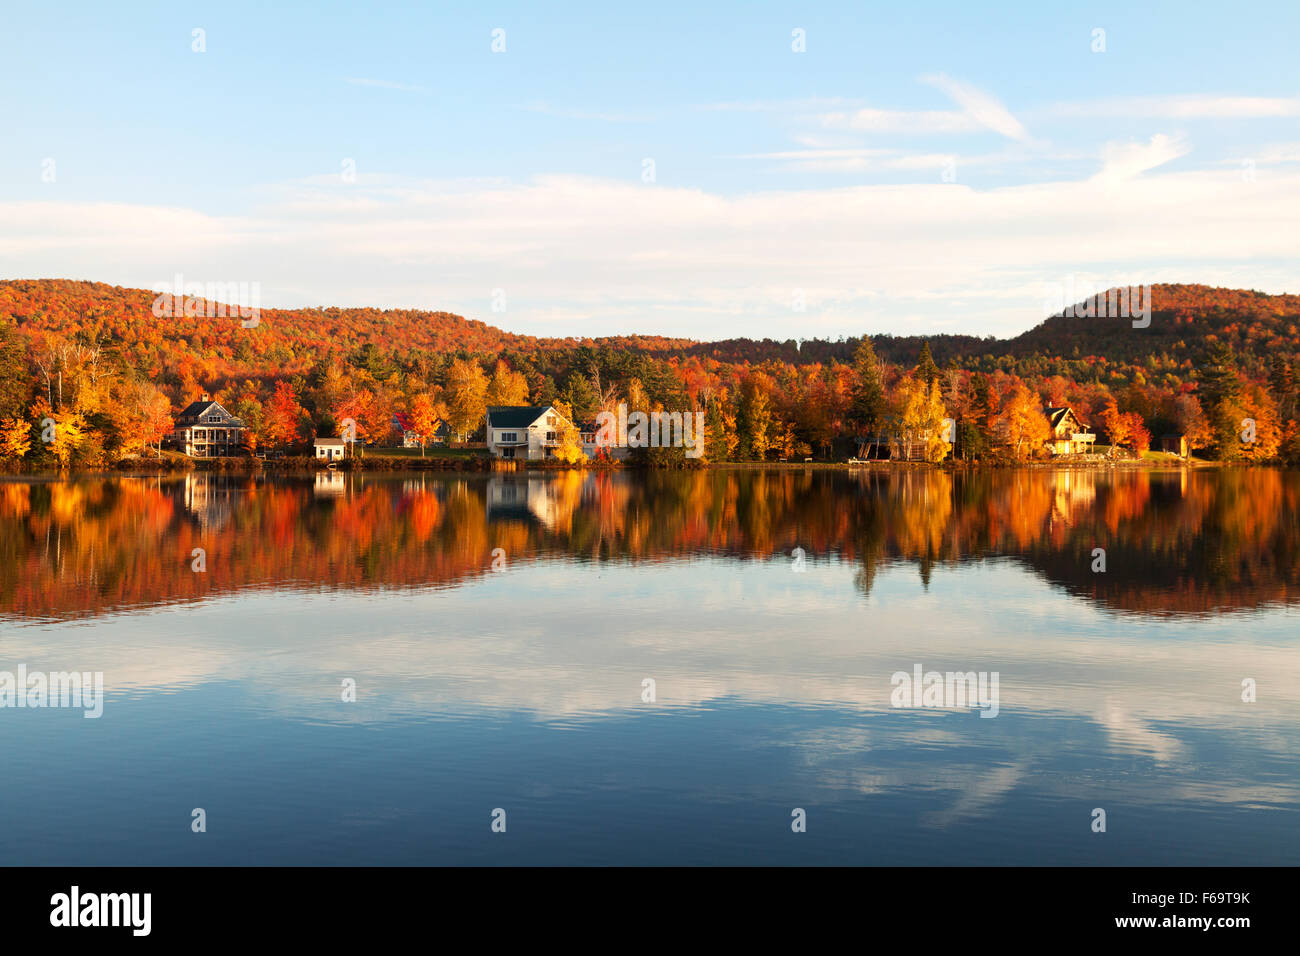 Neuengland im Herbst; Häuser am See am Eden Lake bei Sonnenuntergang in den USA; Lamoille County, Vermont, Neuengland USA (siehe auch F5GWEY) Stockfoto